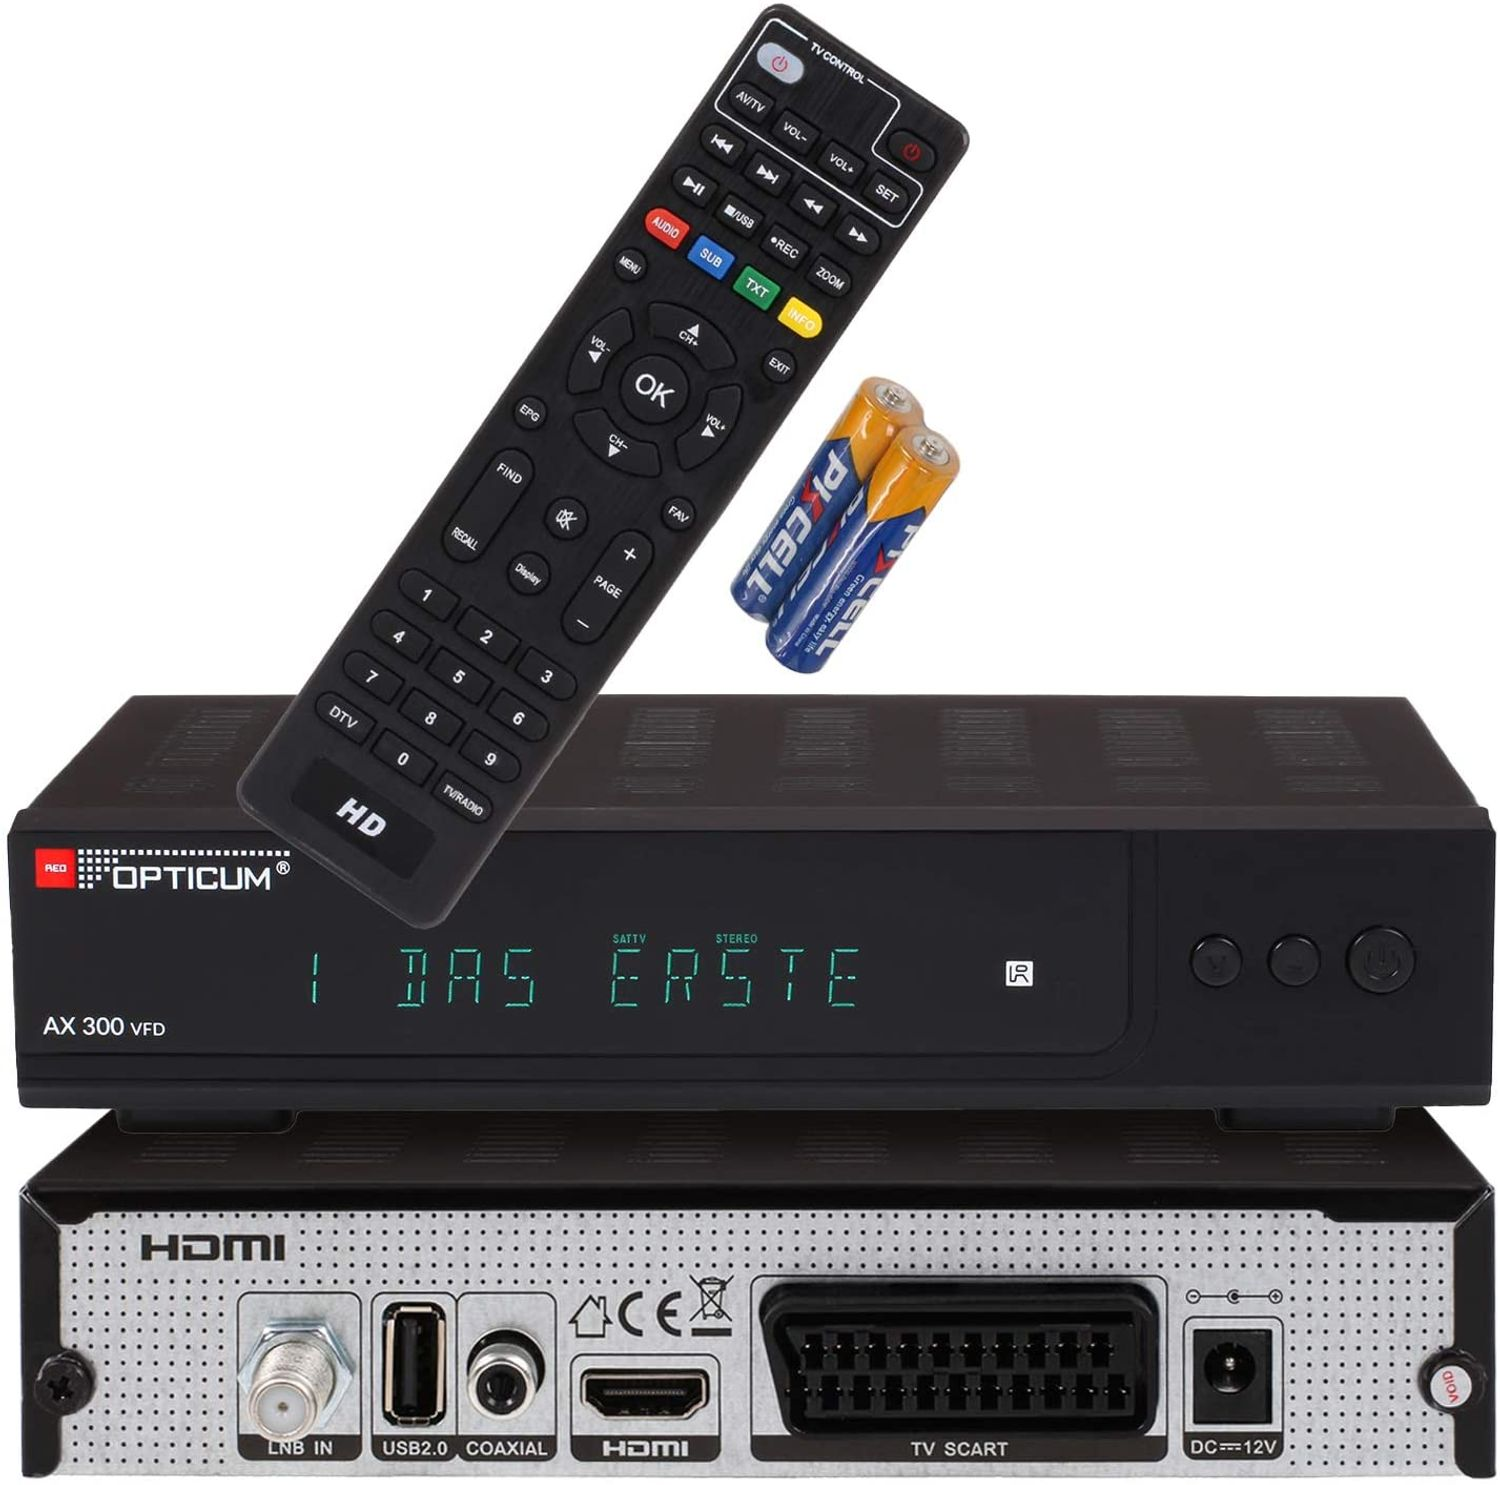 Satelliten-Receiver Sat AX Receiver DVB-S2 VFD (HDTV, DVB-S, HD-TV 300 DVB-S2, RED 12 alphanumerischem schwarz) I Receiver OPTICUM V mit Digitaler - Display